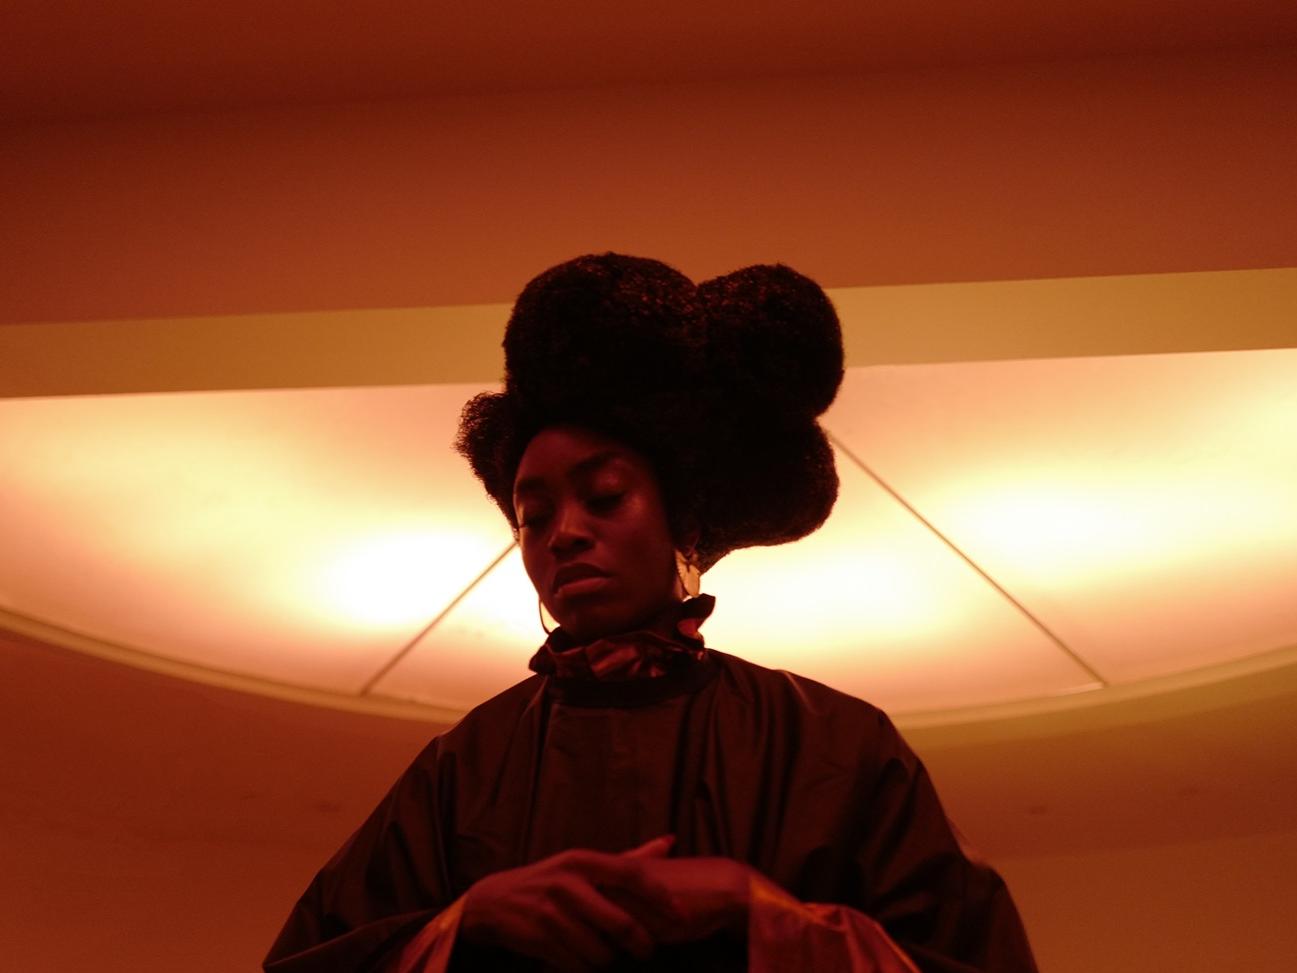 Fotografía de una mujer afrodescendiente sobre un fondo anaranjado